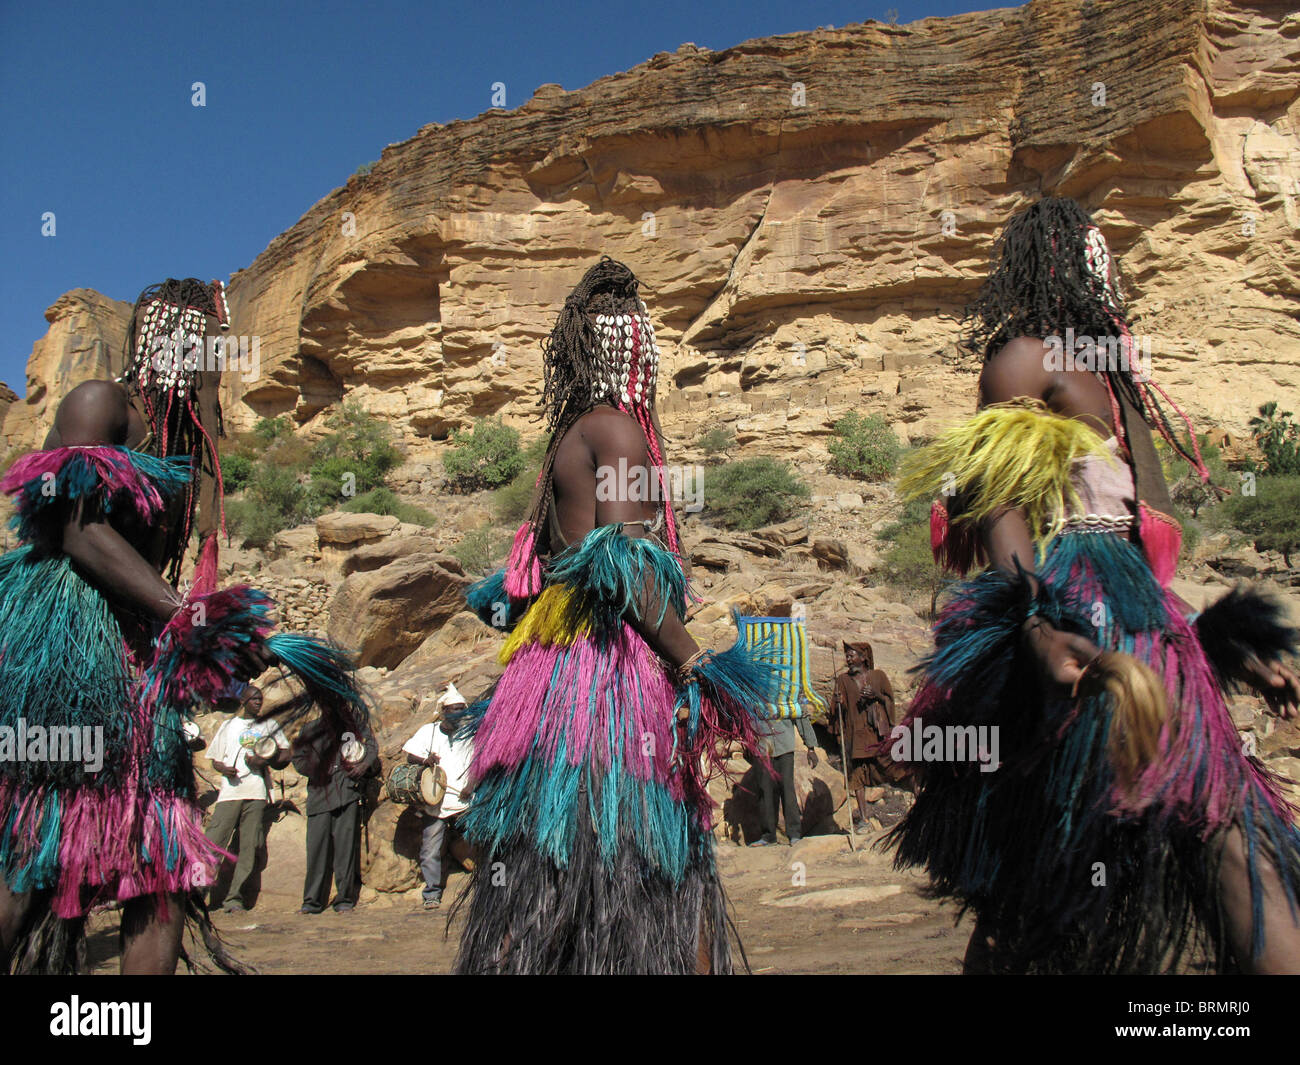 Dogones bailarines con máscaras y coloridas faldas de paja larga realizando una danza ceremonial Foto de stock